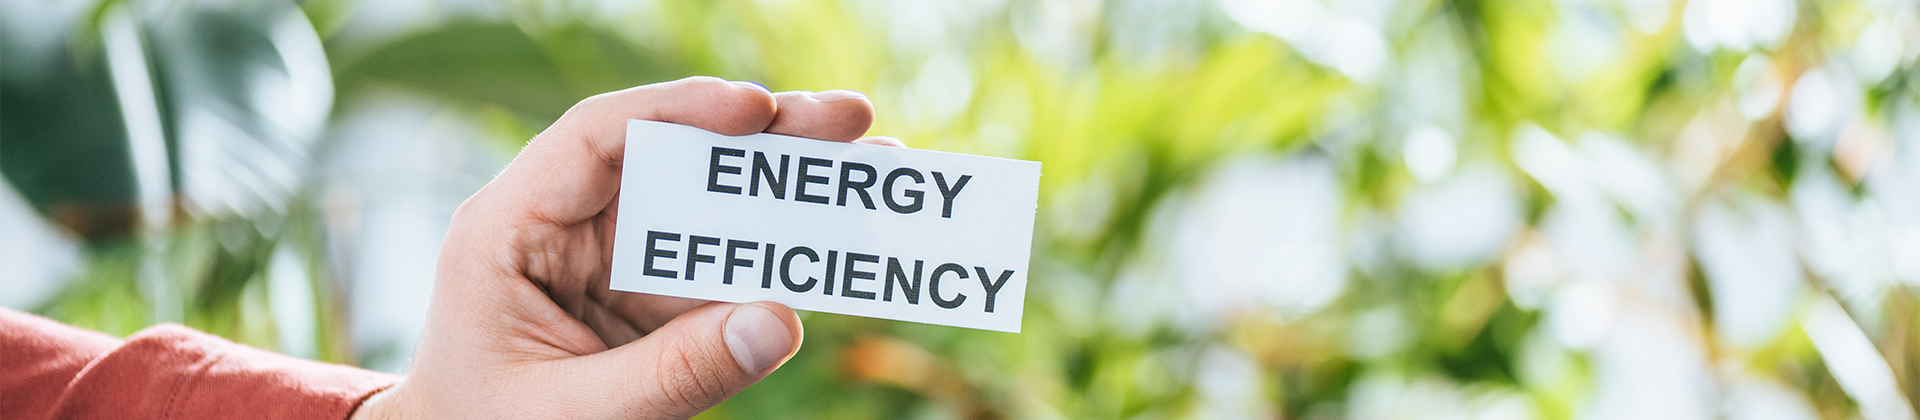 Eficiencia energética mejorada gracias a la nueva EED